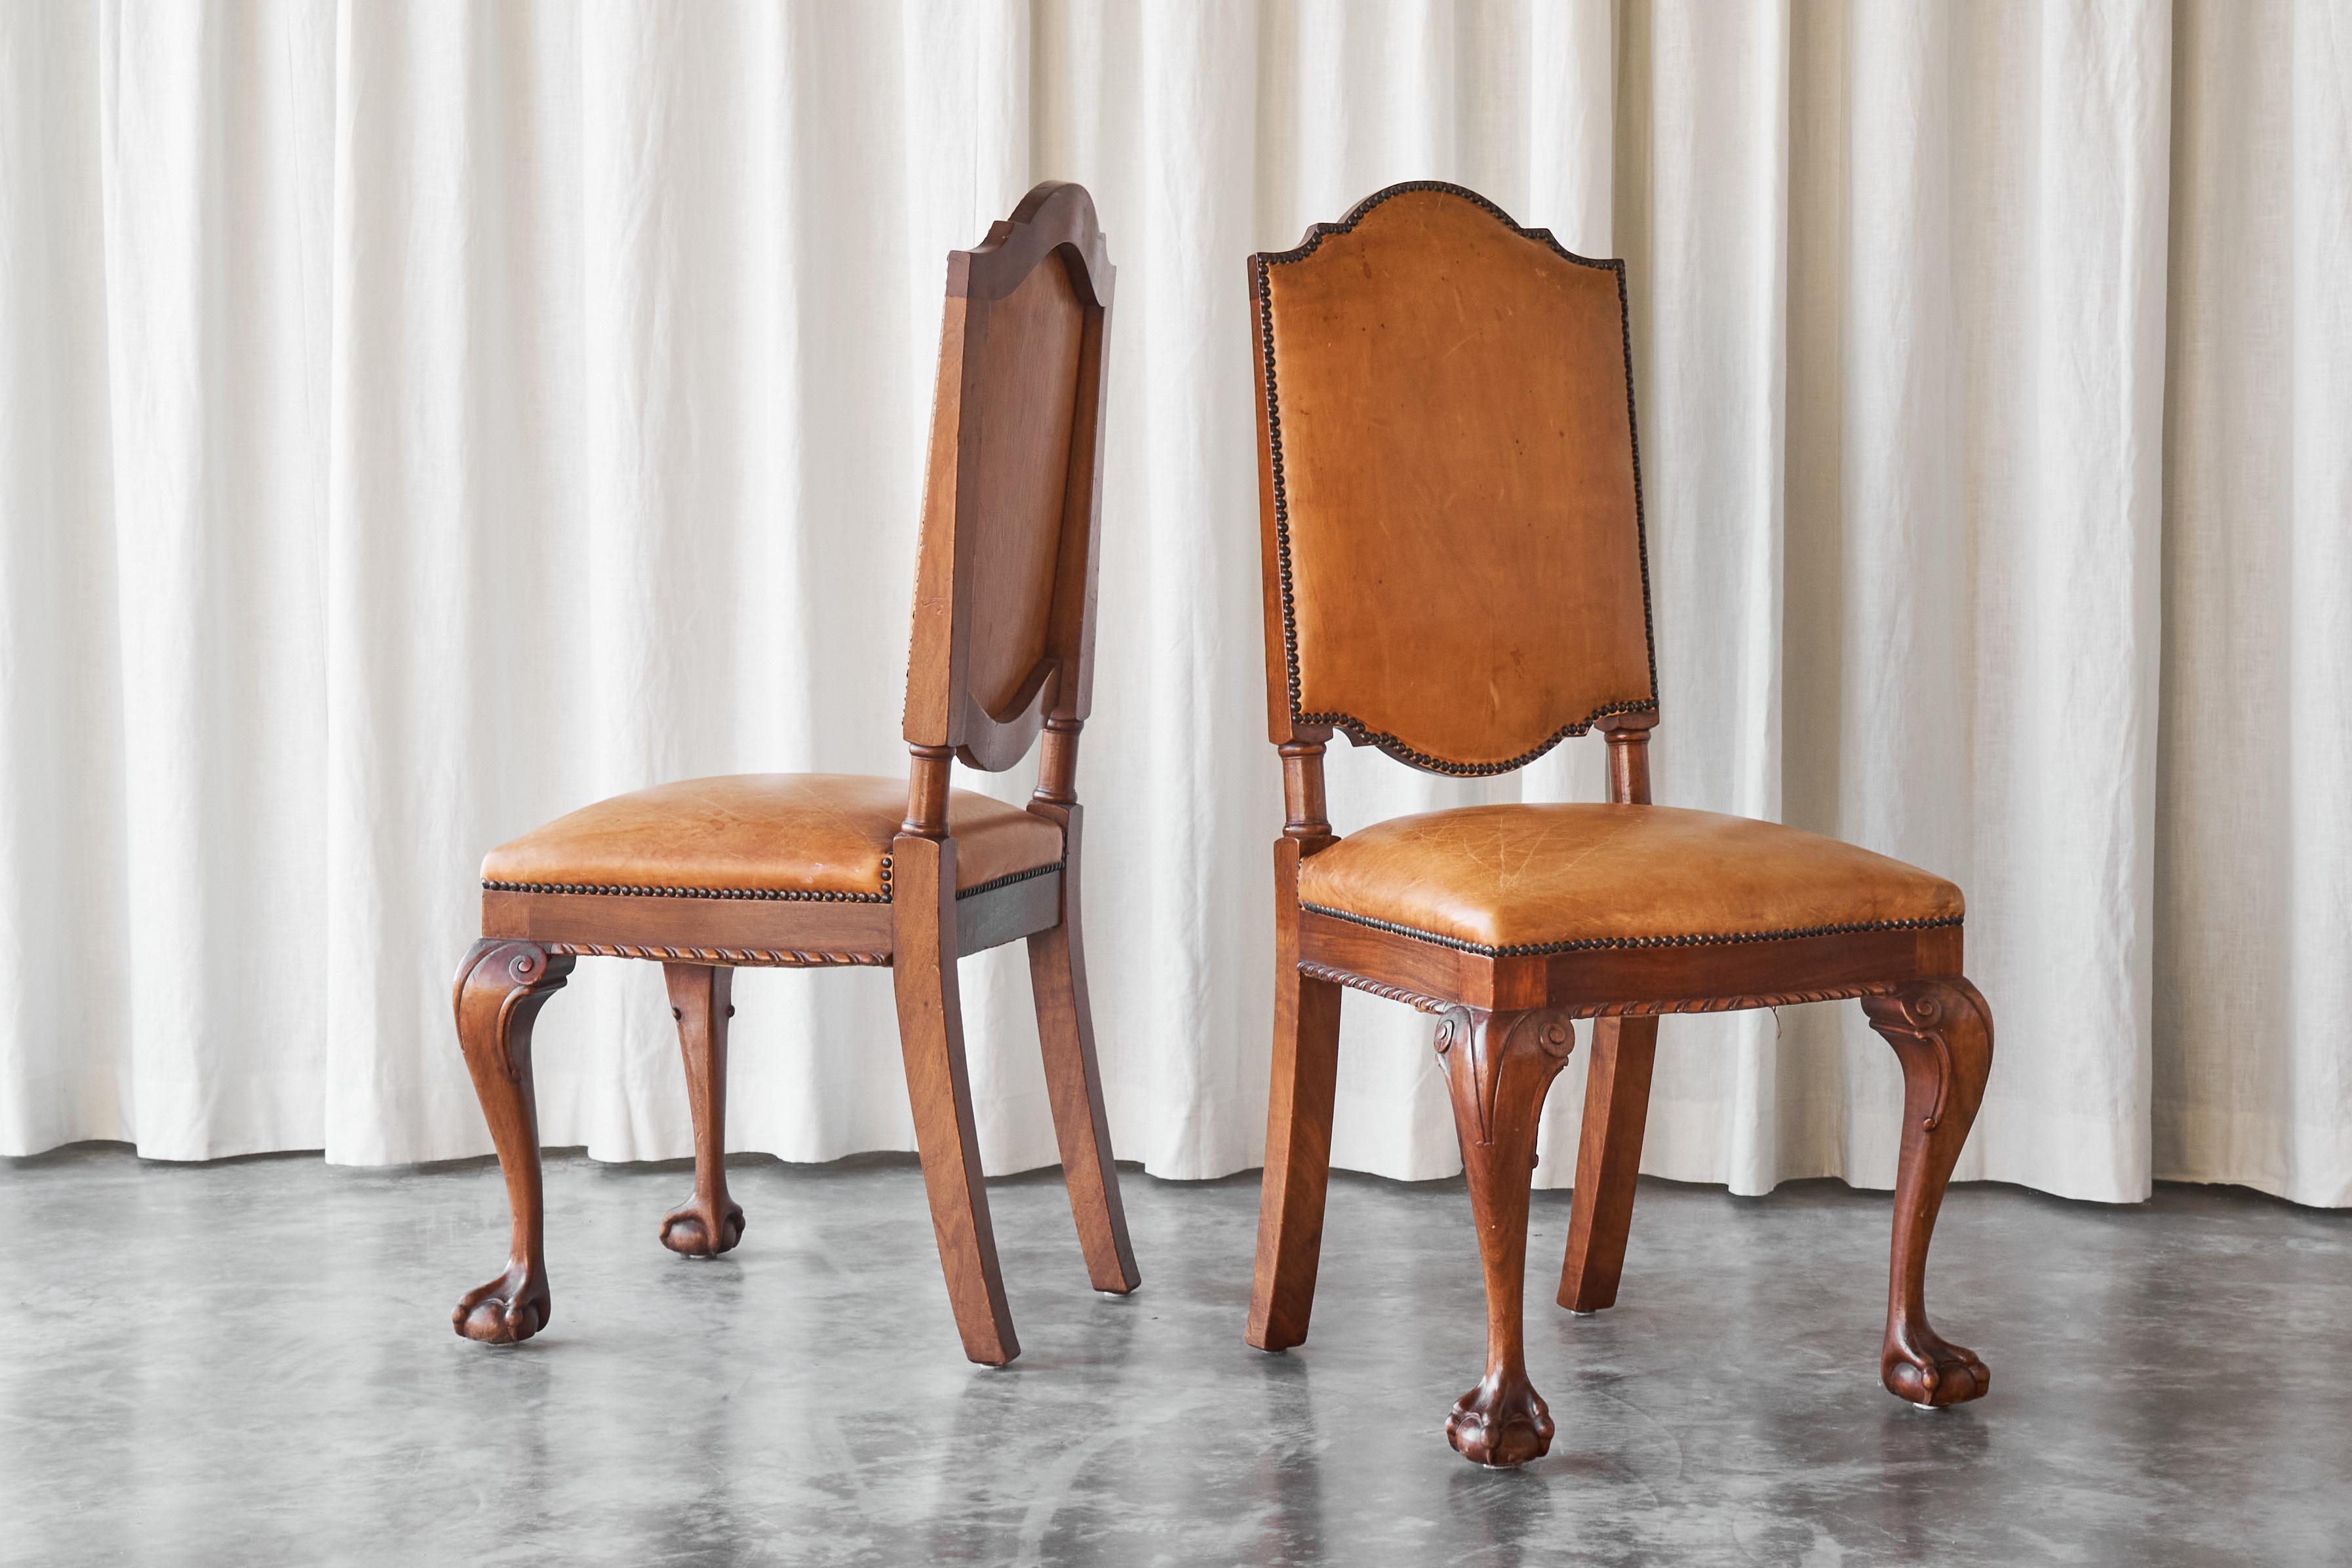 Il s'agit d'une paire très rare de chaises latérales 't Woonhuys Amsterdam en cuir cognac patiné très désirable, fabriquées dans les années 1920.

Au début du XXe siècle, 't Woonhuys, à Amsterdam, était l'entreprise de meubles la plus illustre de